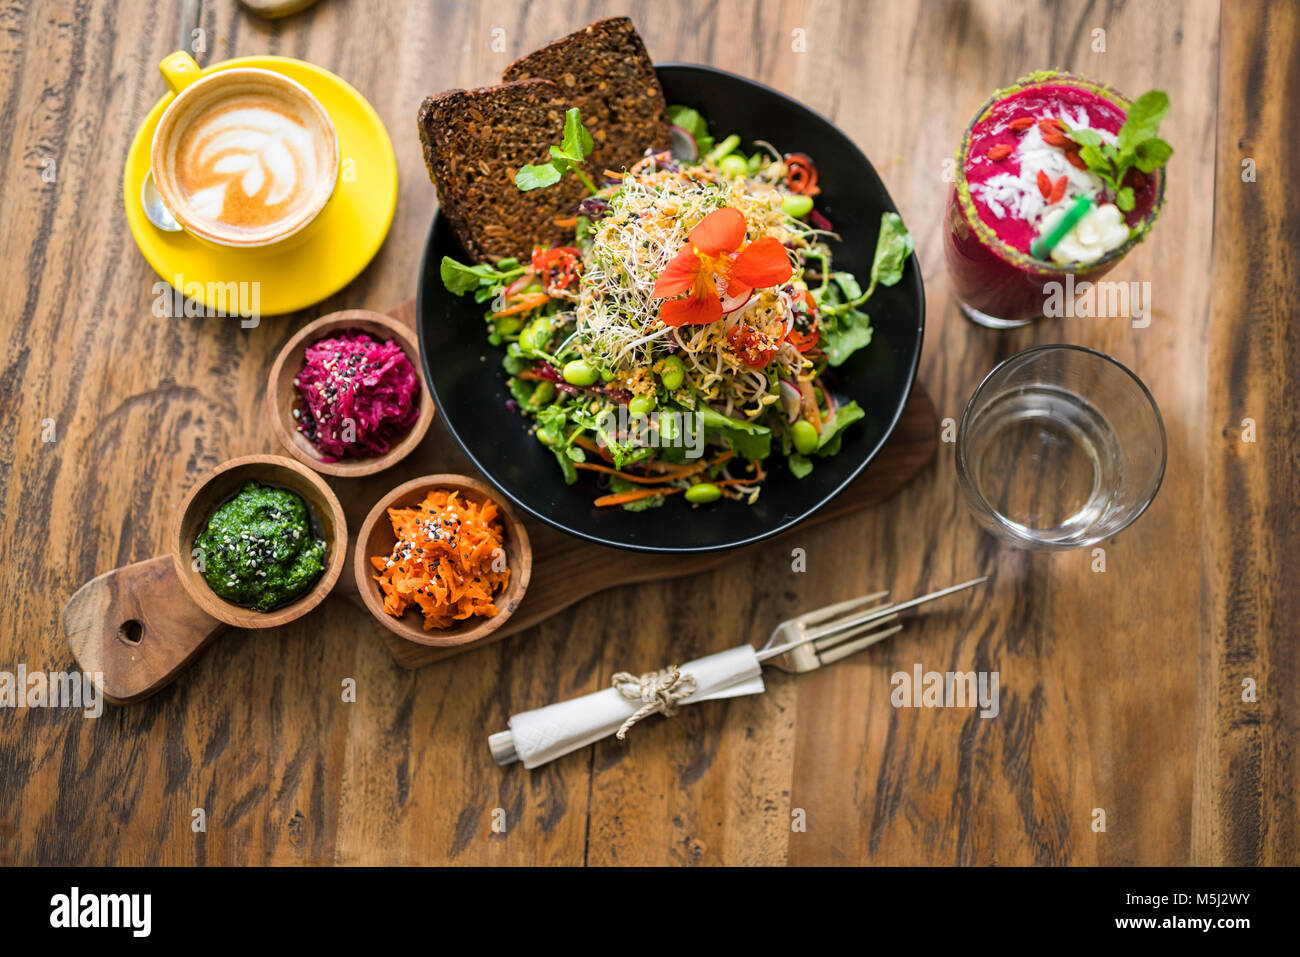 Decorate insalata colorata sul piatto di legno con caffè, acqua e frullati sul lato Foto Stock